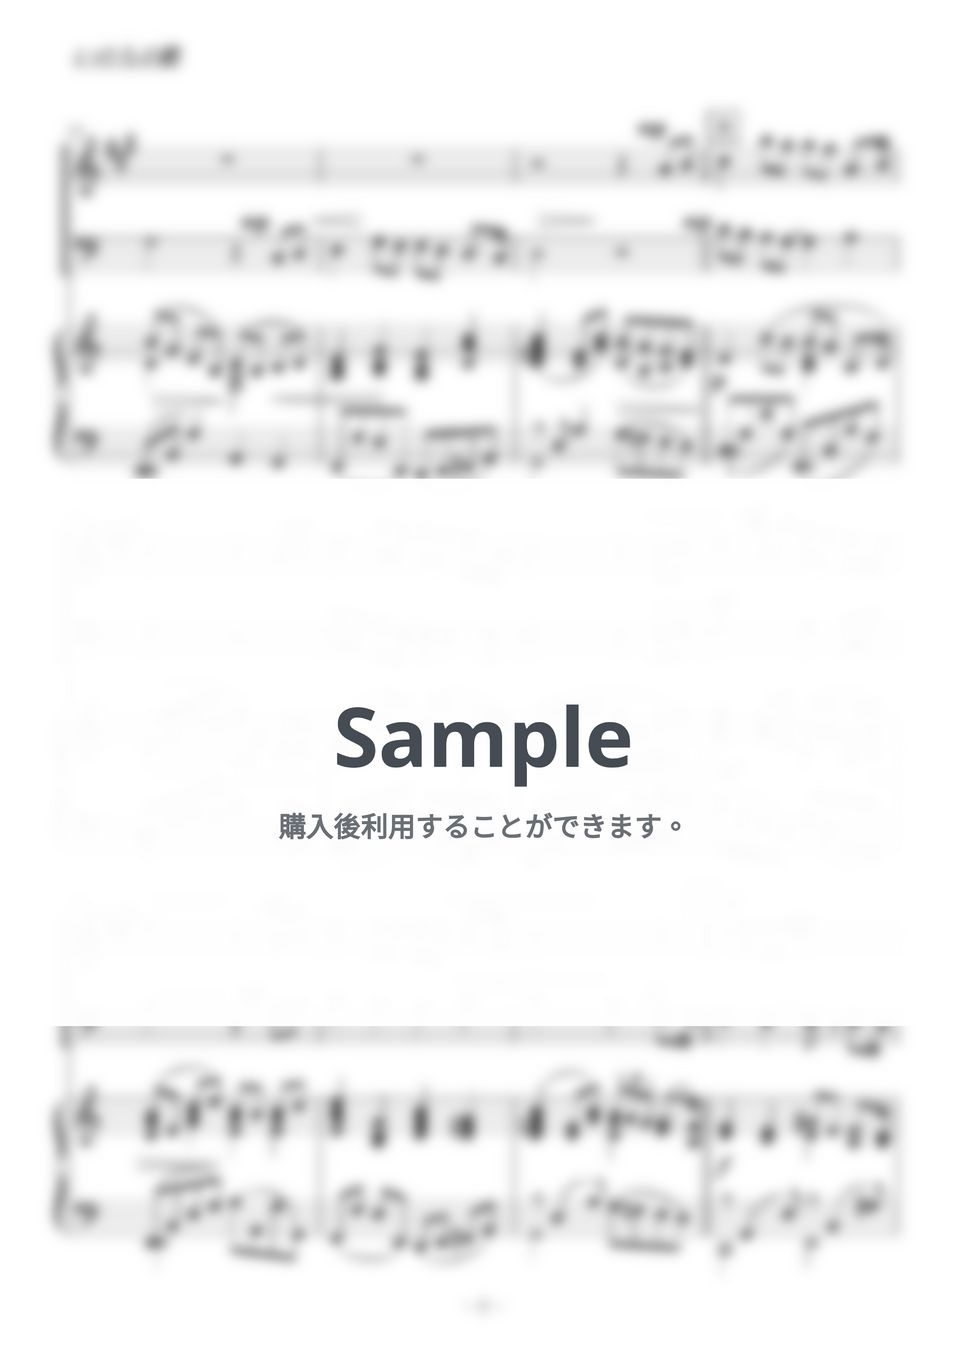 竹内まりや - いのちの歌 (アルトサックス・トロンボーン二重奏) by kiminabe